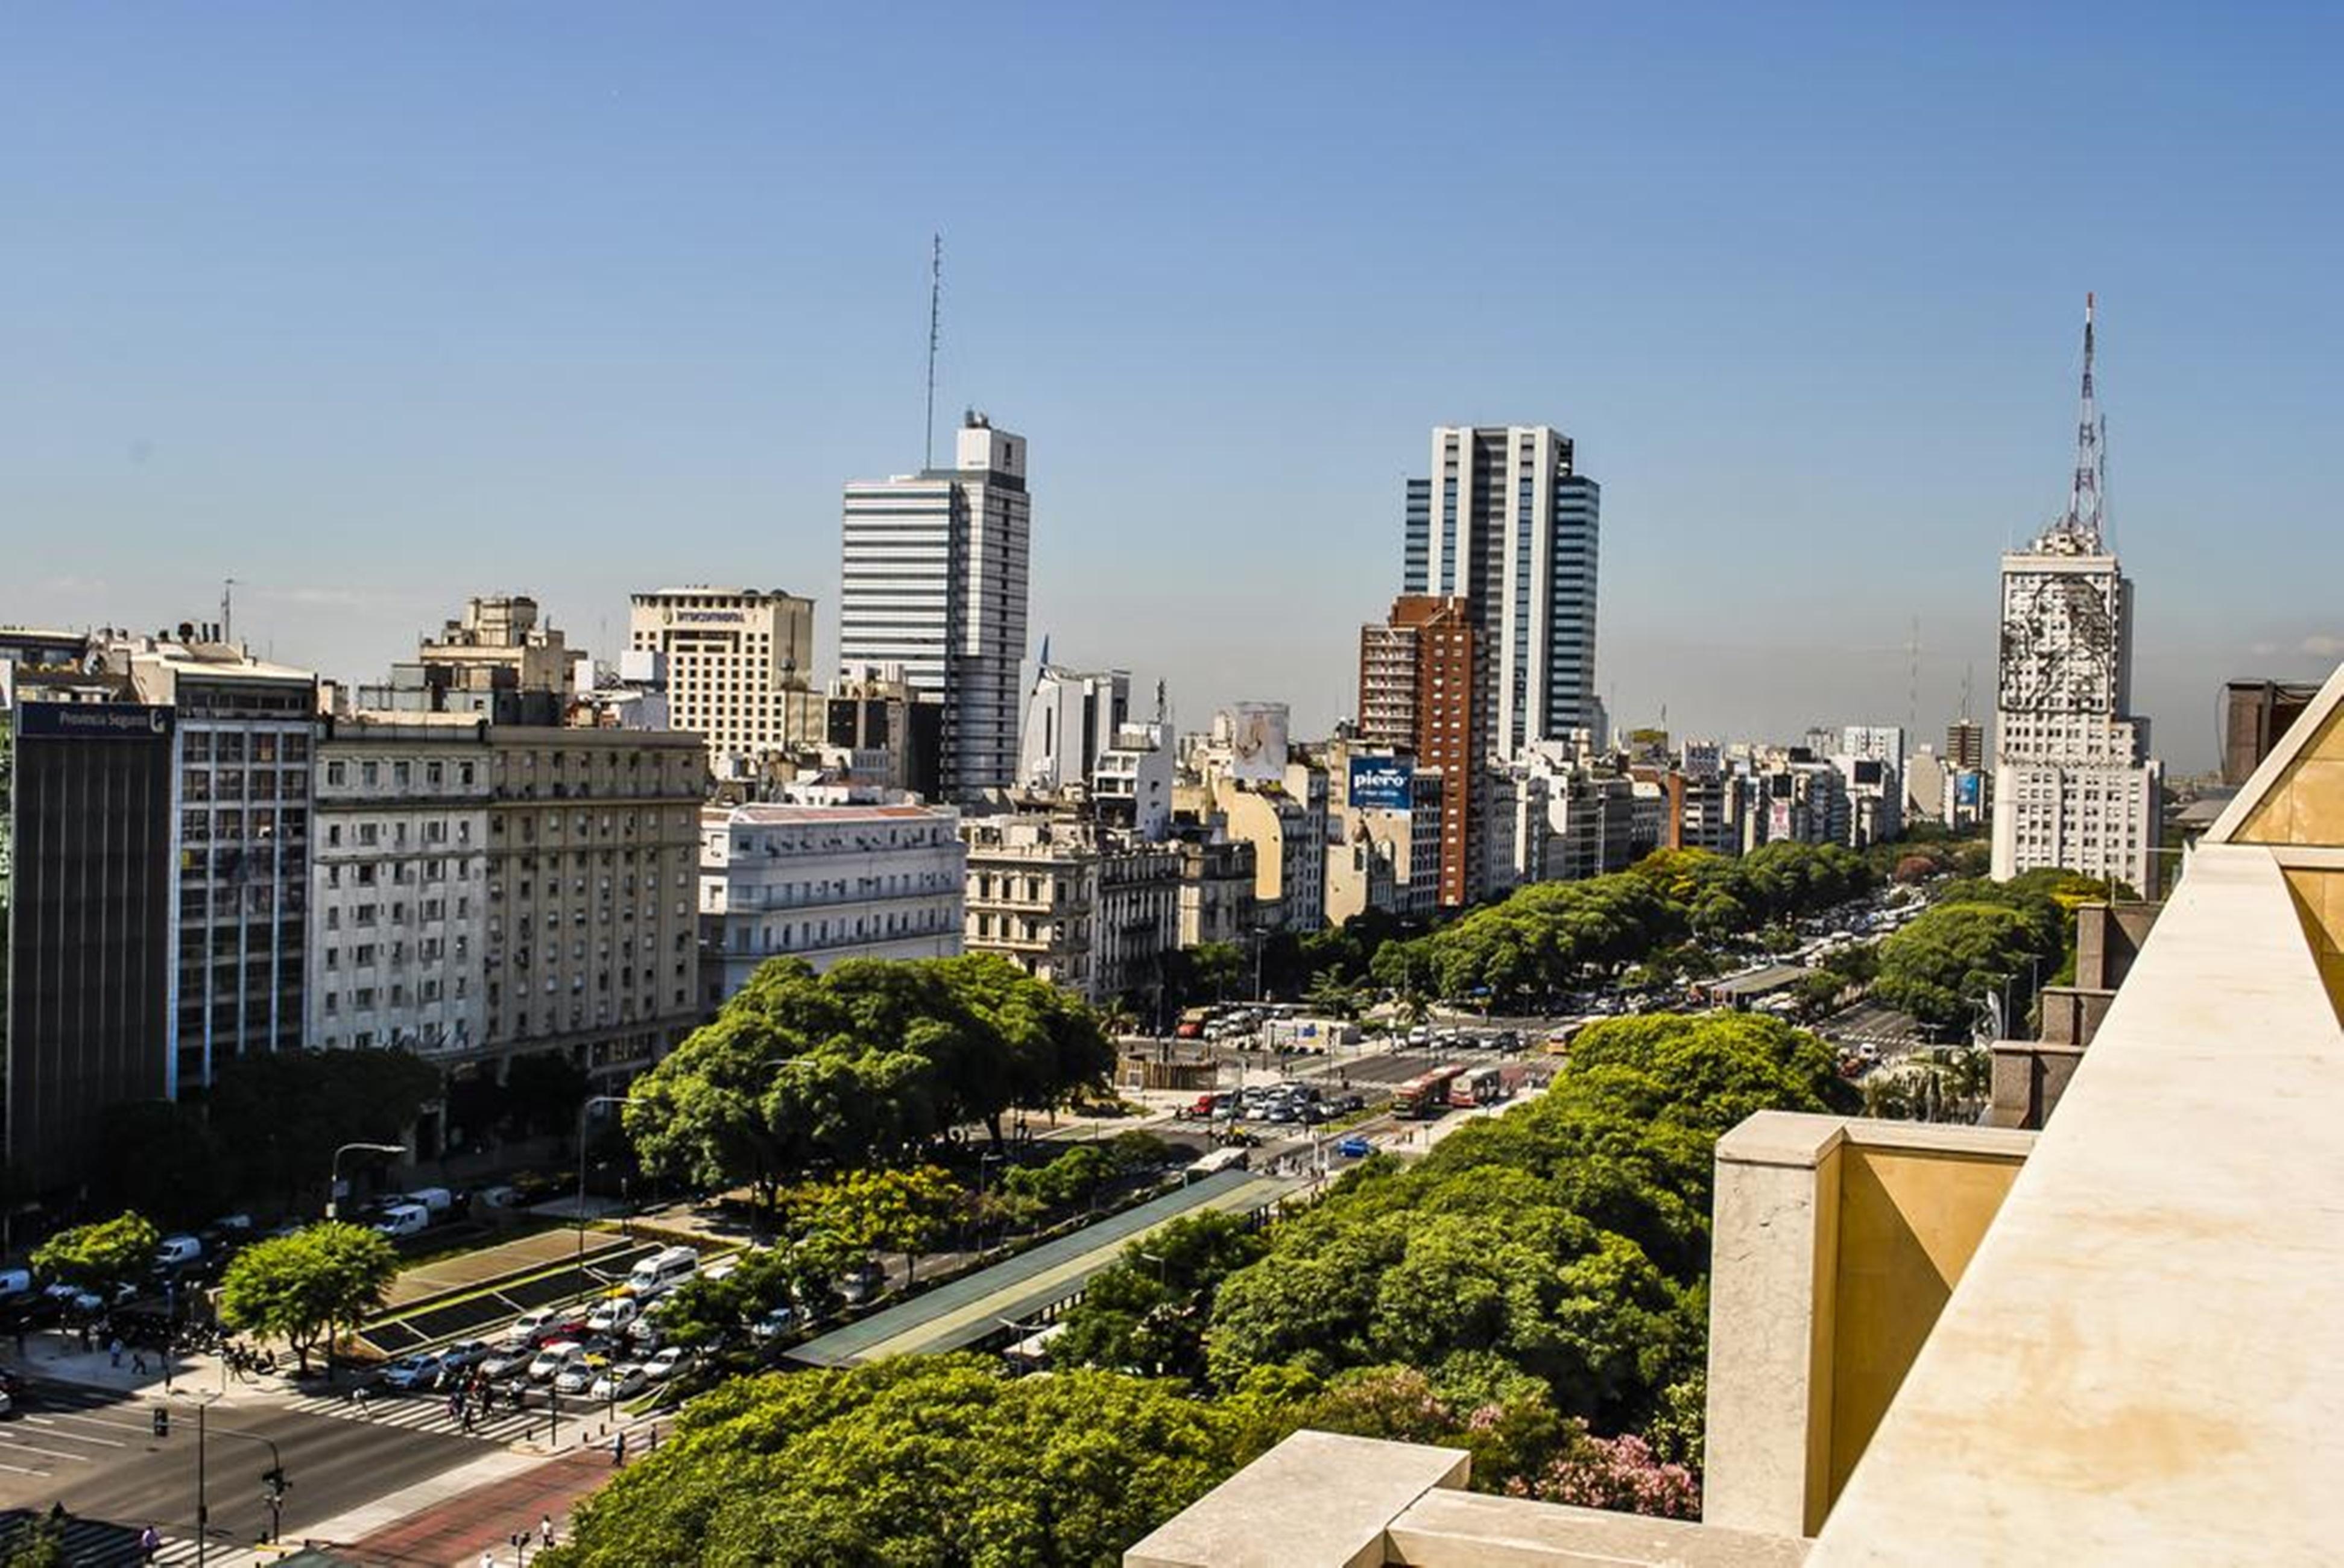 Hotel Grand Brizo Buenos Aires Dış mekan fotoğraf